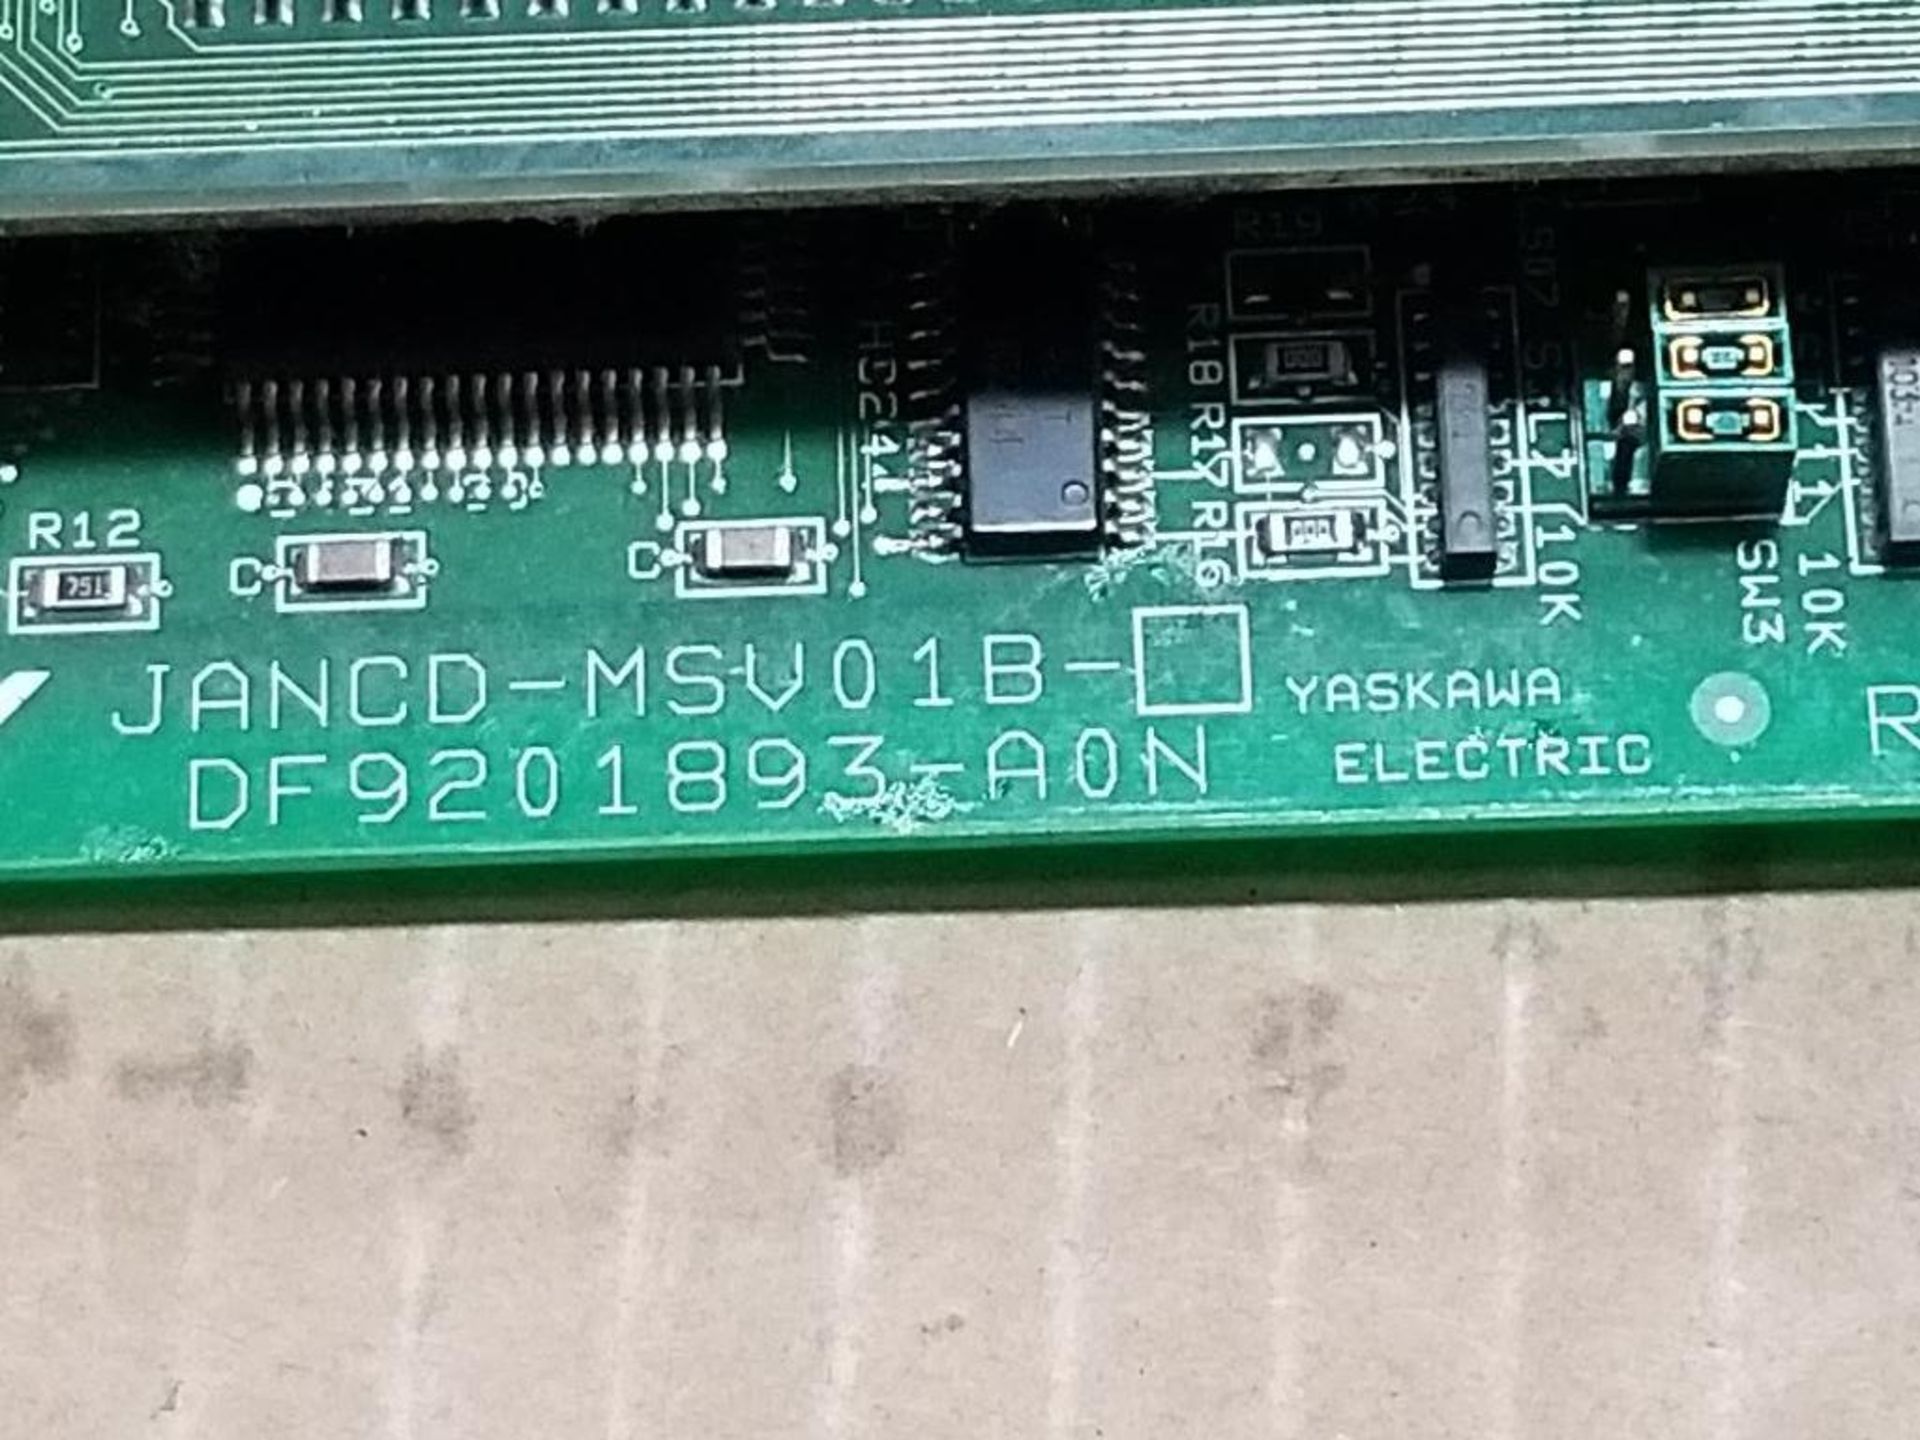 Qty 2 - Yaskawa JANCD-MSV01B CNC PC board. MSV018. - Image 9 of 10